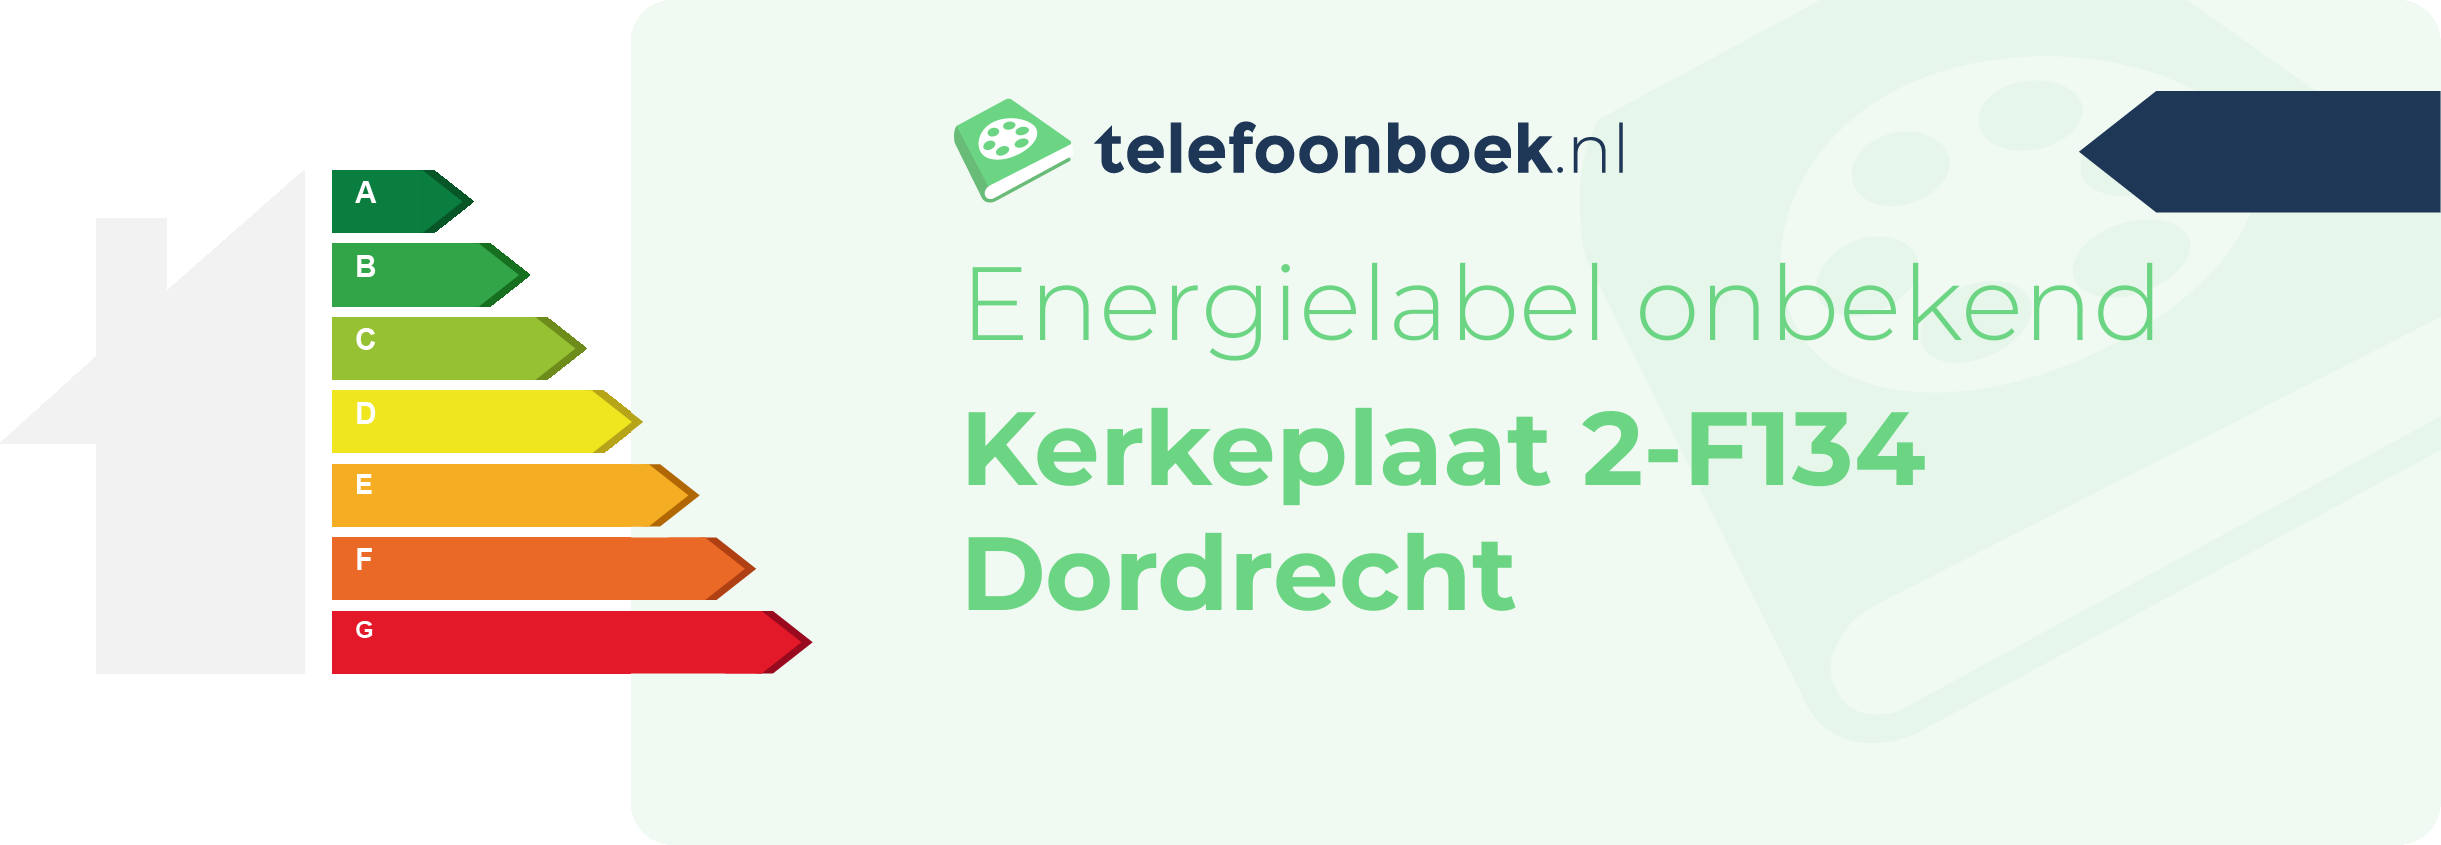 Energielabel Kerkeplaat 2-F134 Dordrecht